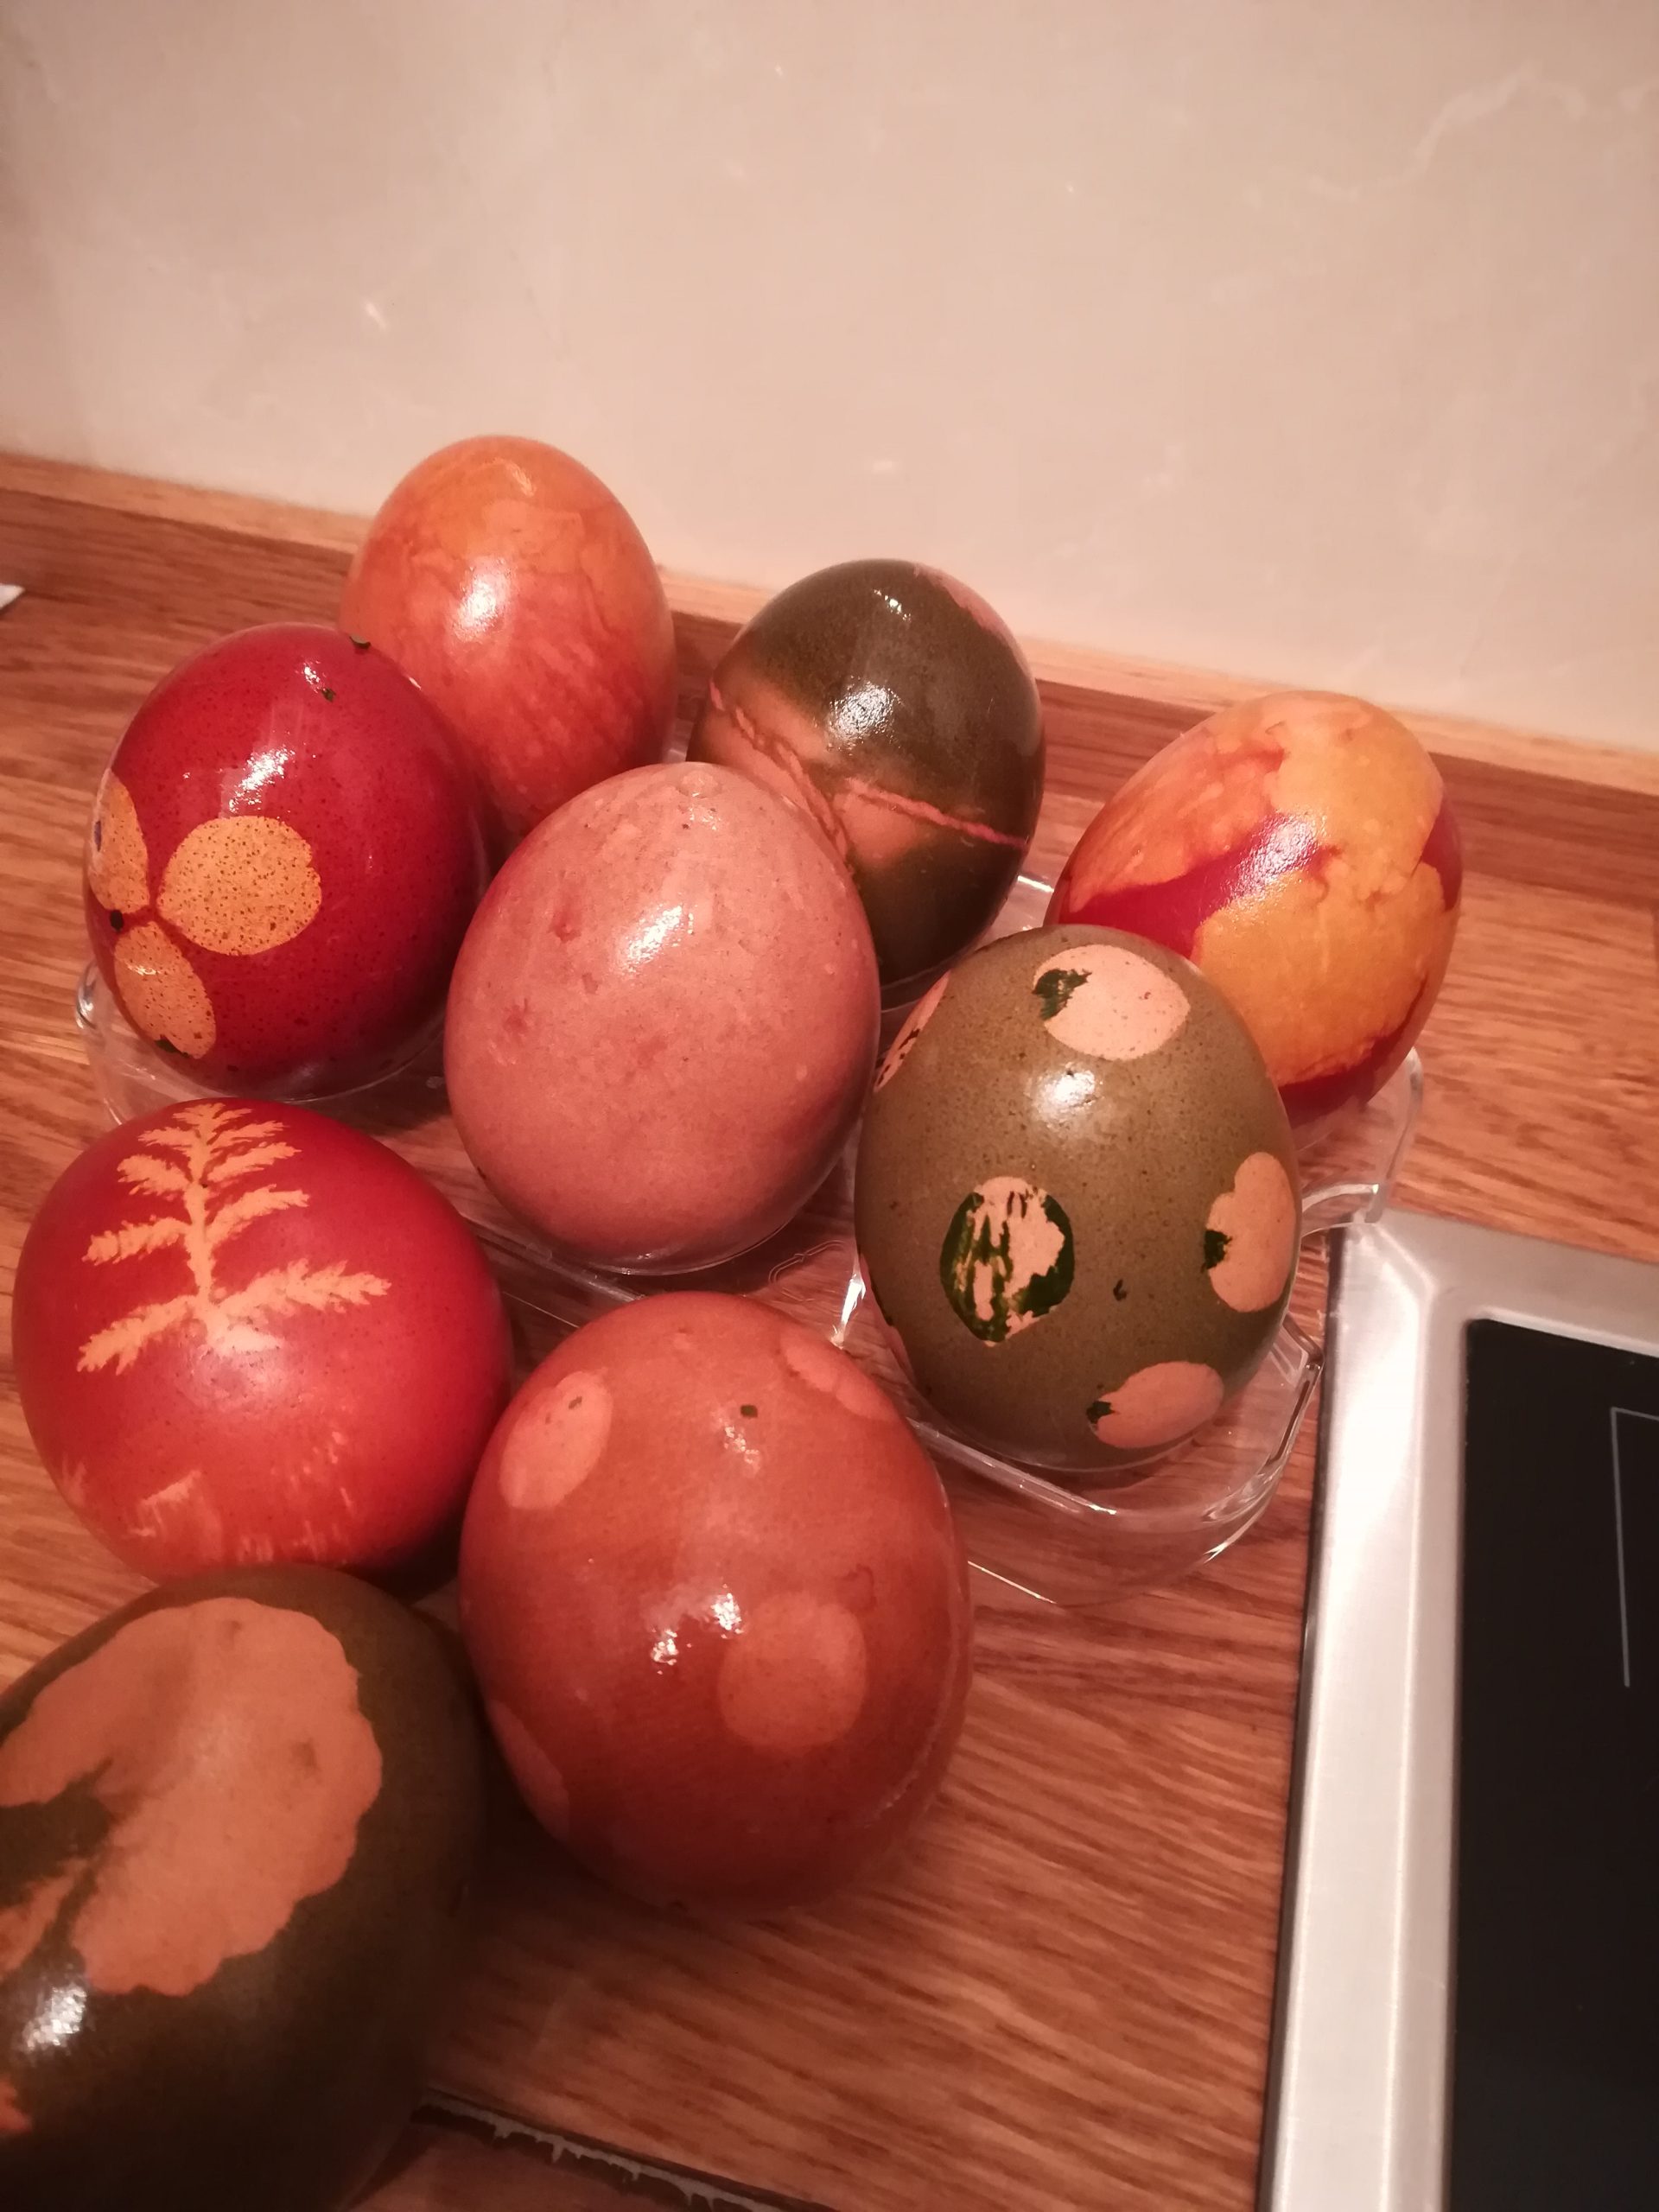 Eier färben, Ostern, natürlich, Zwiebelschalen, Mate, Rote Bete, Kochfarbe, Pflanzenmuster